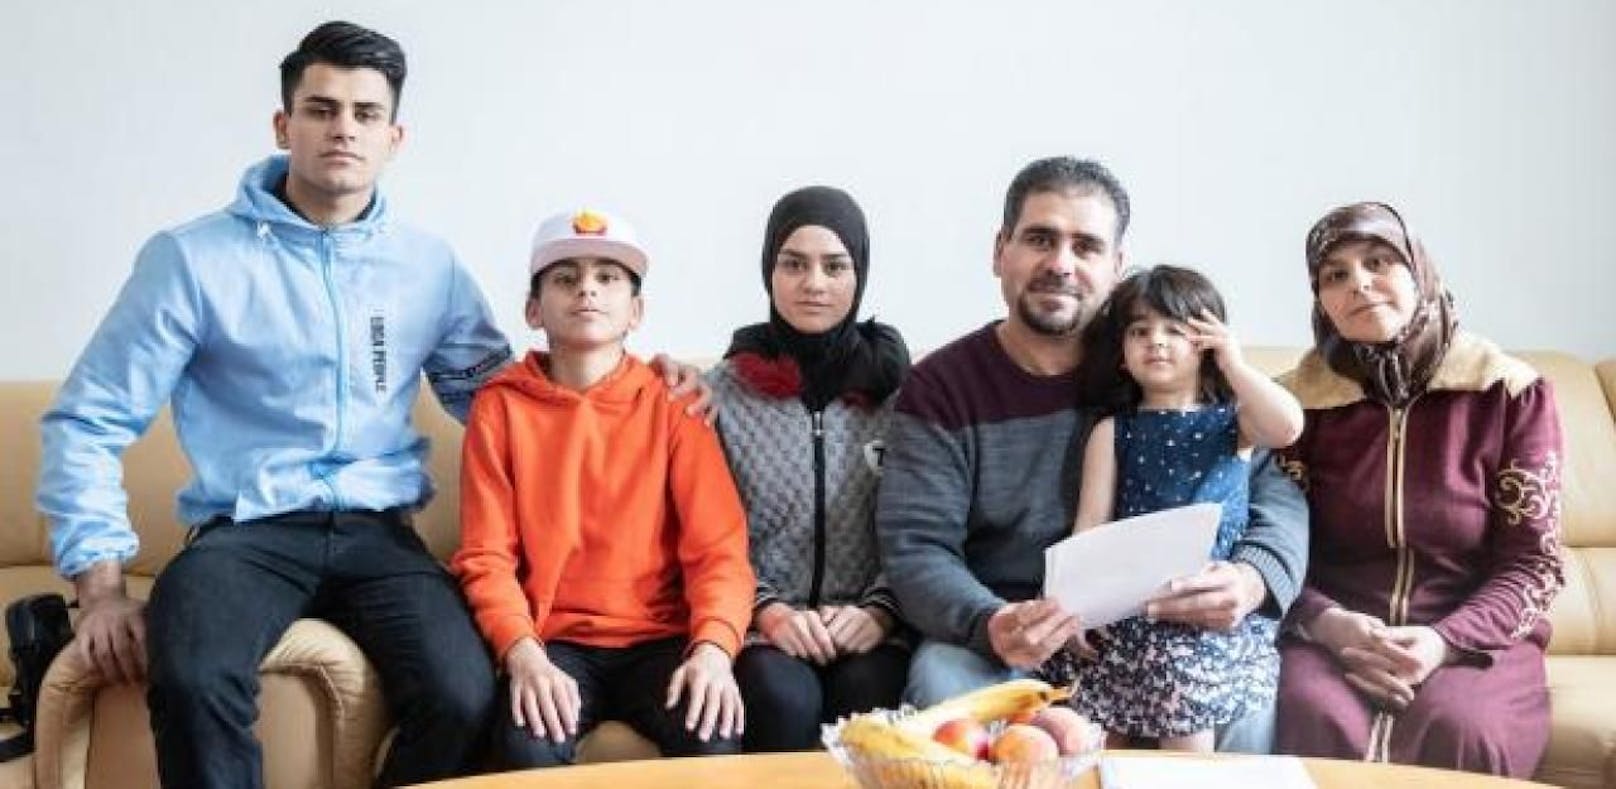 Ort will Familie nicht: Muslime planen Demo